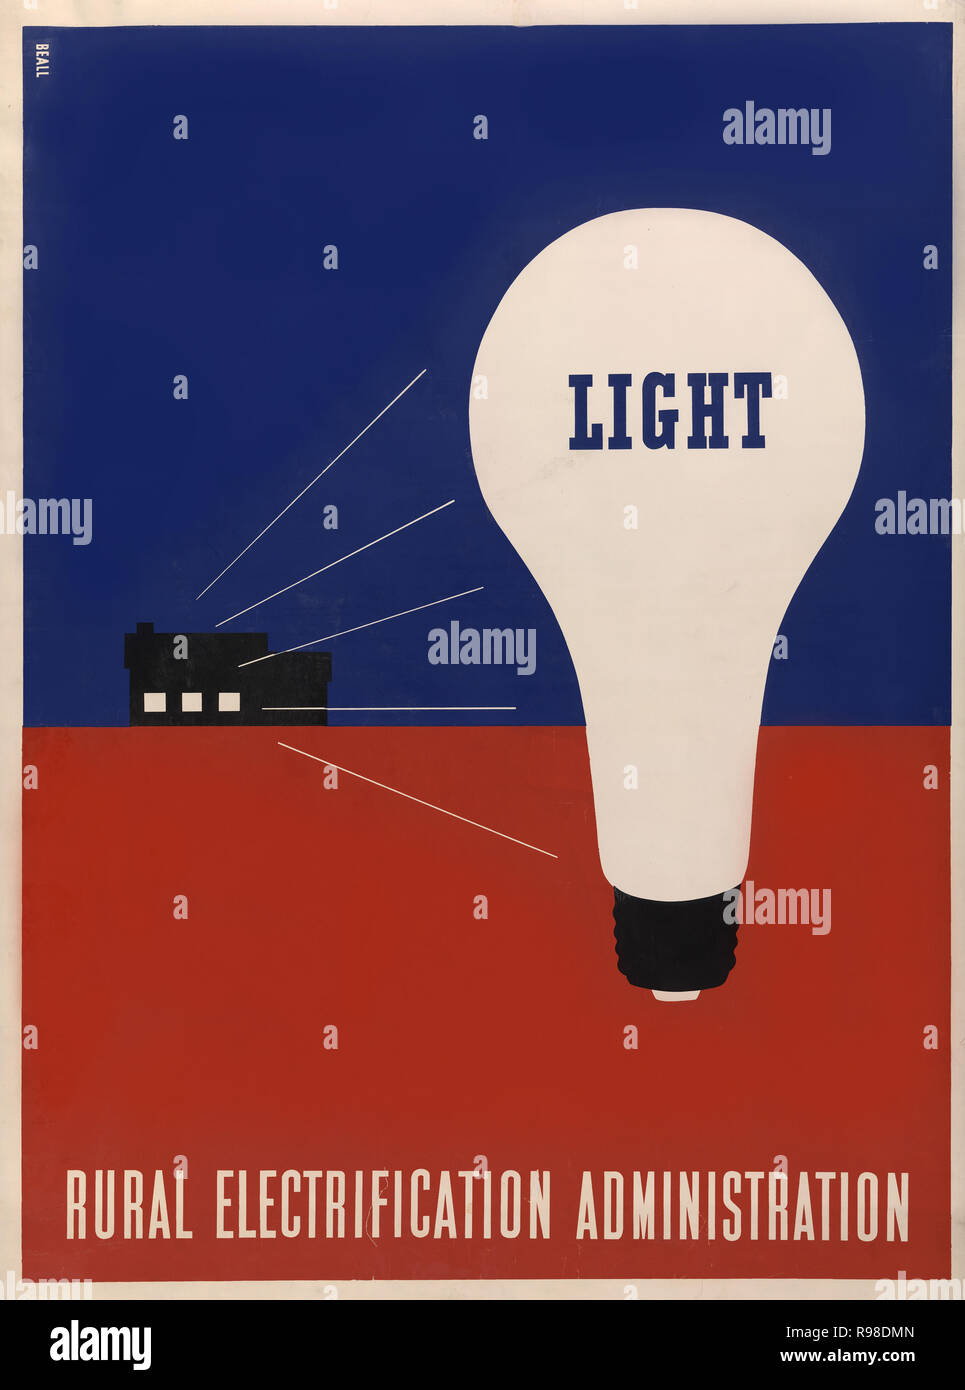 Poster mit großen Glühbirne mit der Beschriftung "Light" im Vordergrund,  Bauernhaus mit Licht strahlt durch die Fenster im Hintergrund, die  ländliche Elektrifizierung, Verwaltung, Artwork von Lester Beall, 1930  Stockfotografie - Alamy